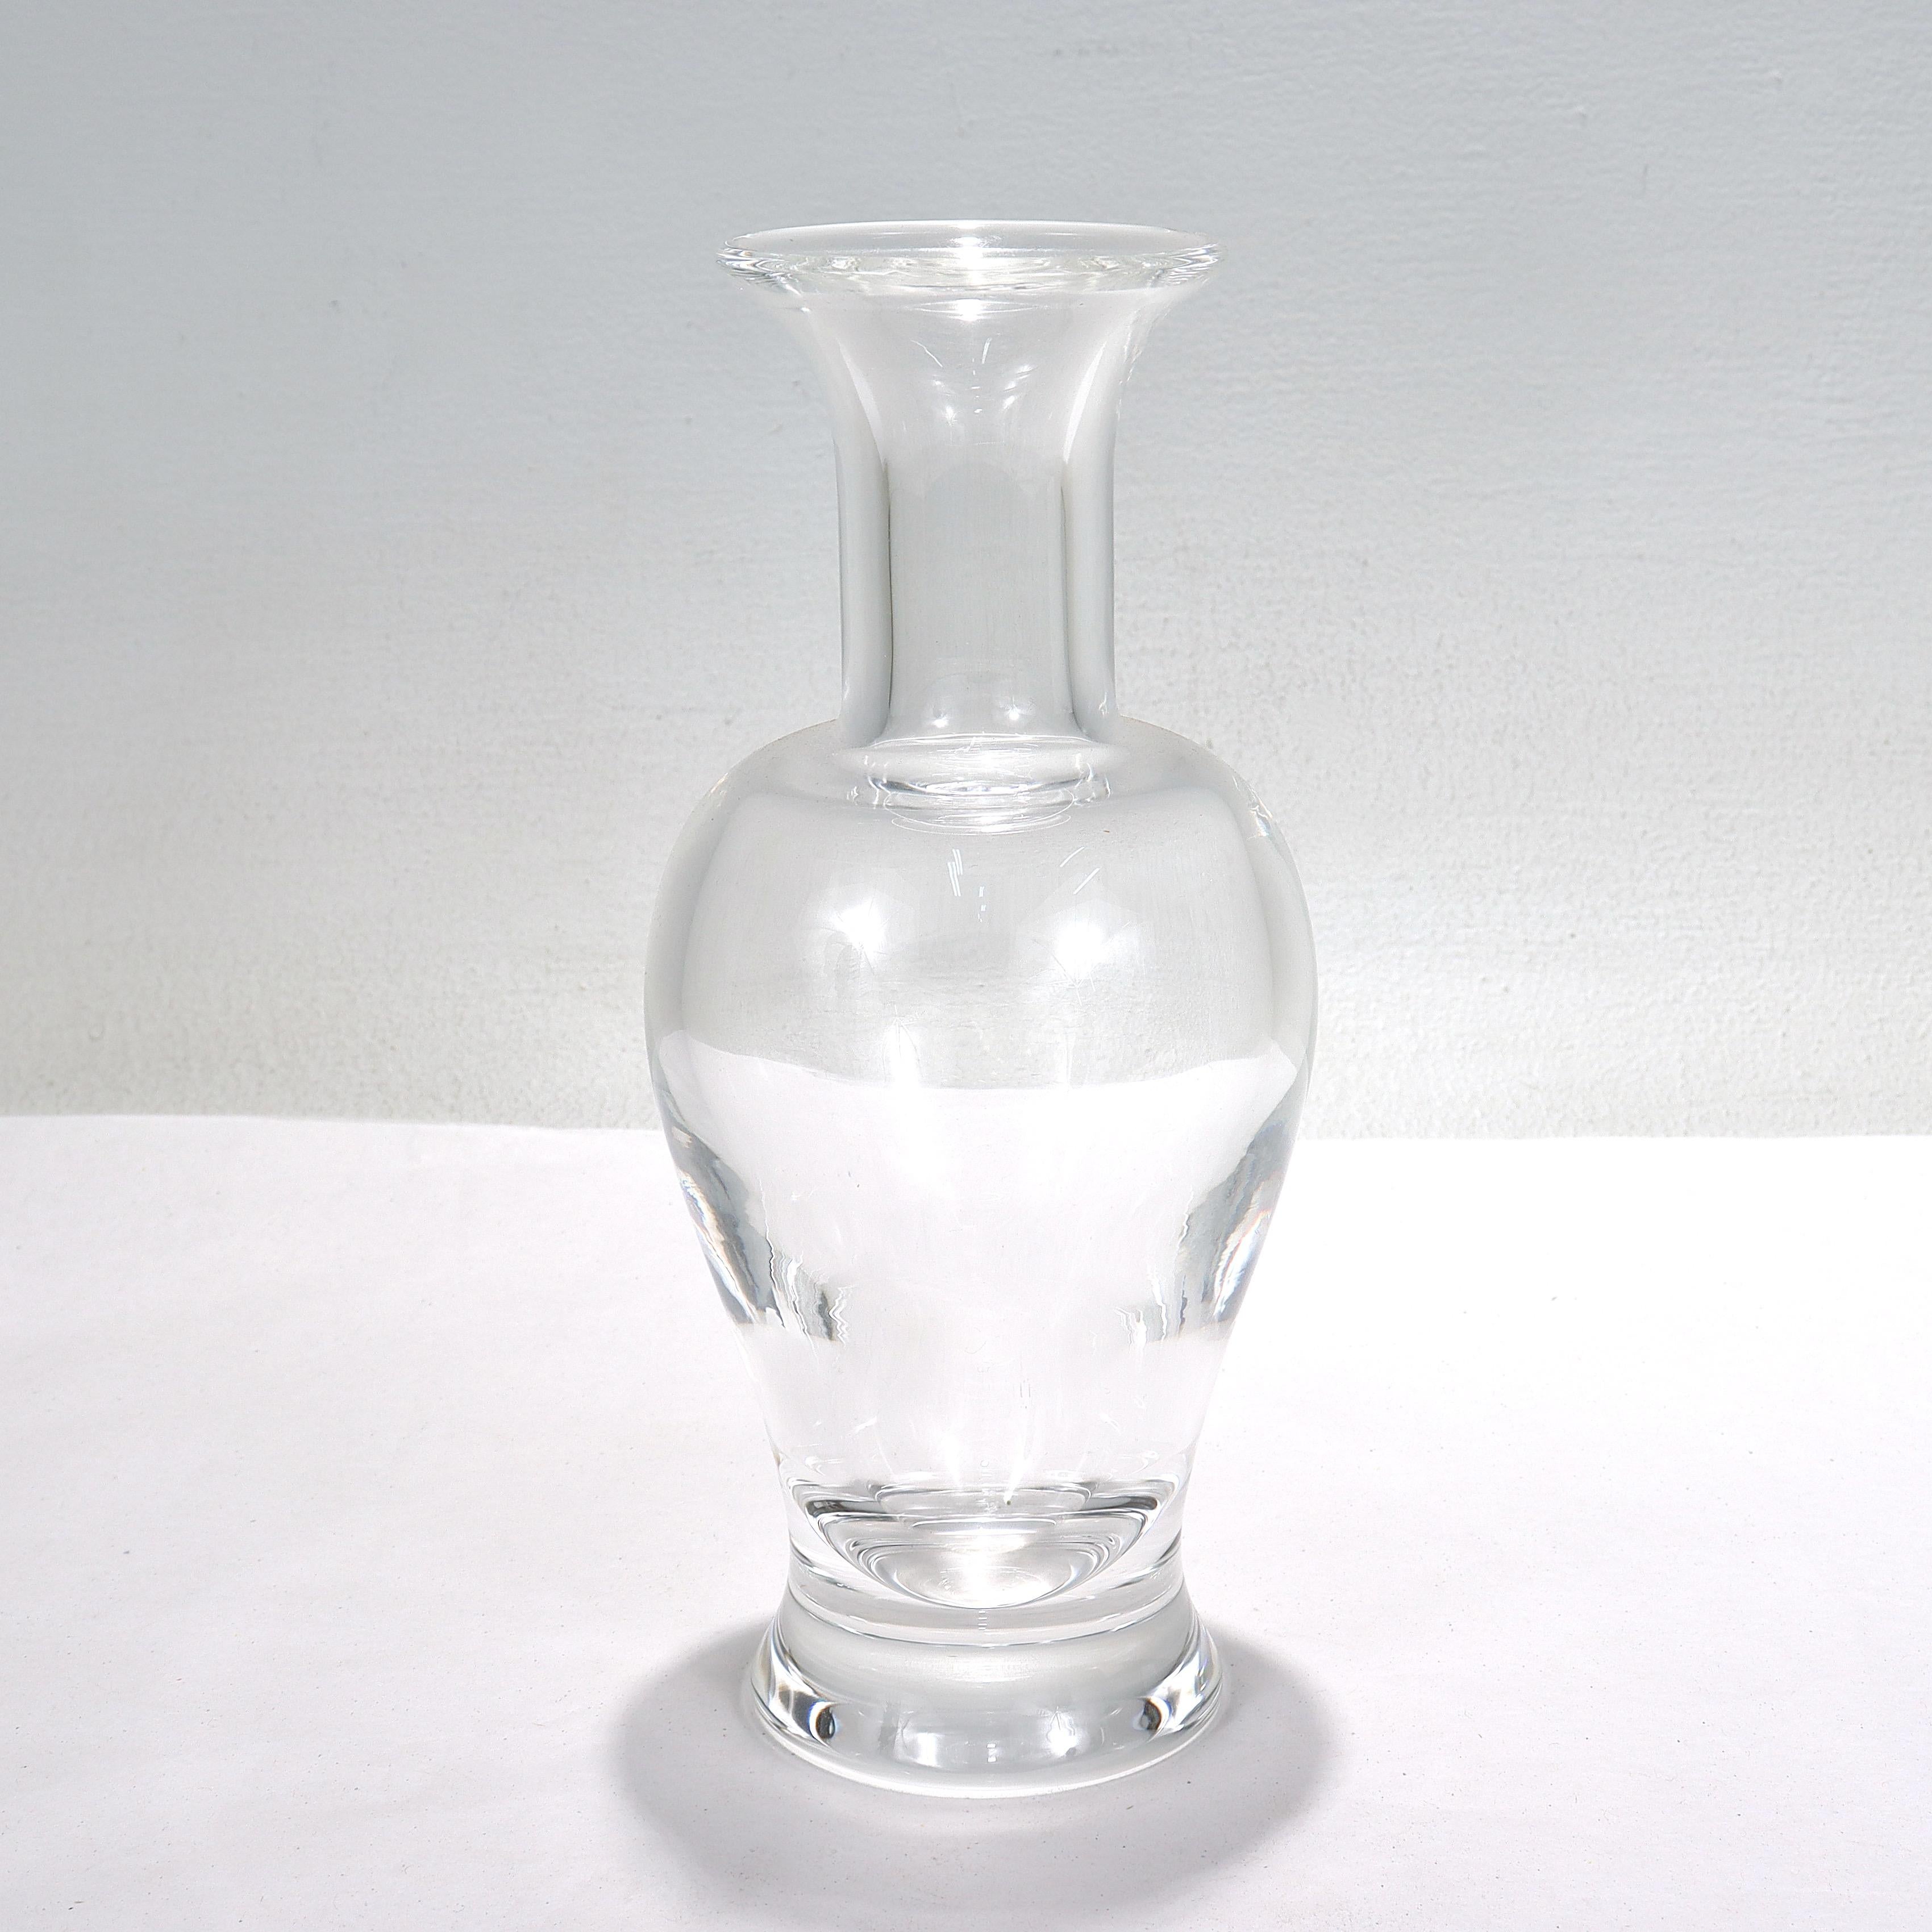 Eine Vase aus feinem Kunstglas.

Von Steuben.

Die Vase Palace Modell Nr. 8354.

Entworfen von Donald Pollard im Jahr 1977.

Mit einer klassischen vasiformen Form.

Einfach eine tolle Vase!

Datum:
20. Jahrhundert

Allgemeiner Zustand:
Es ist in